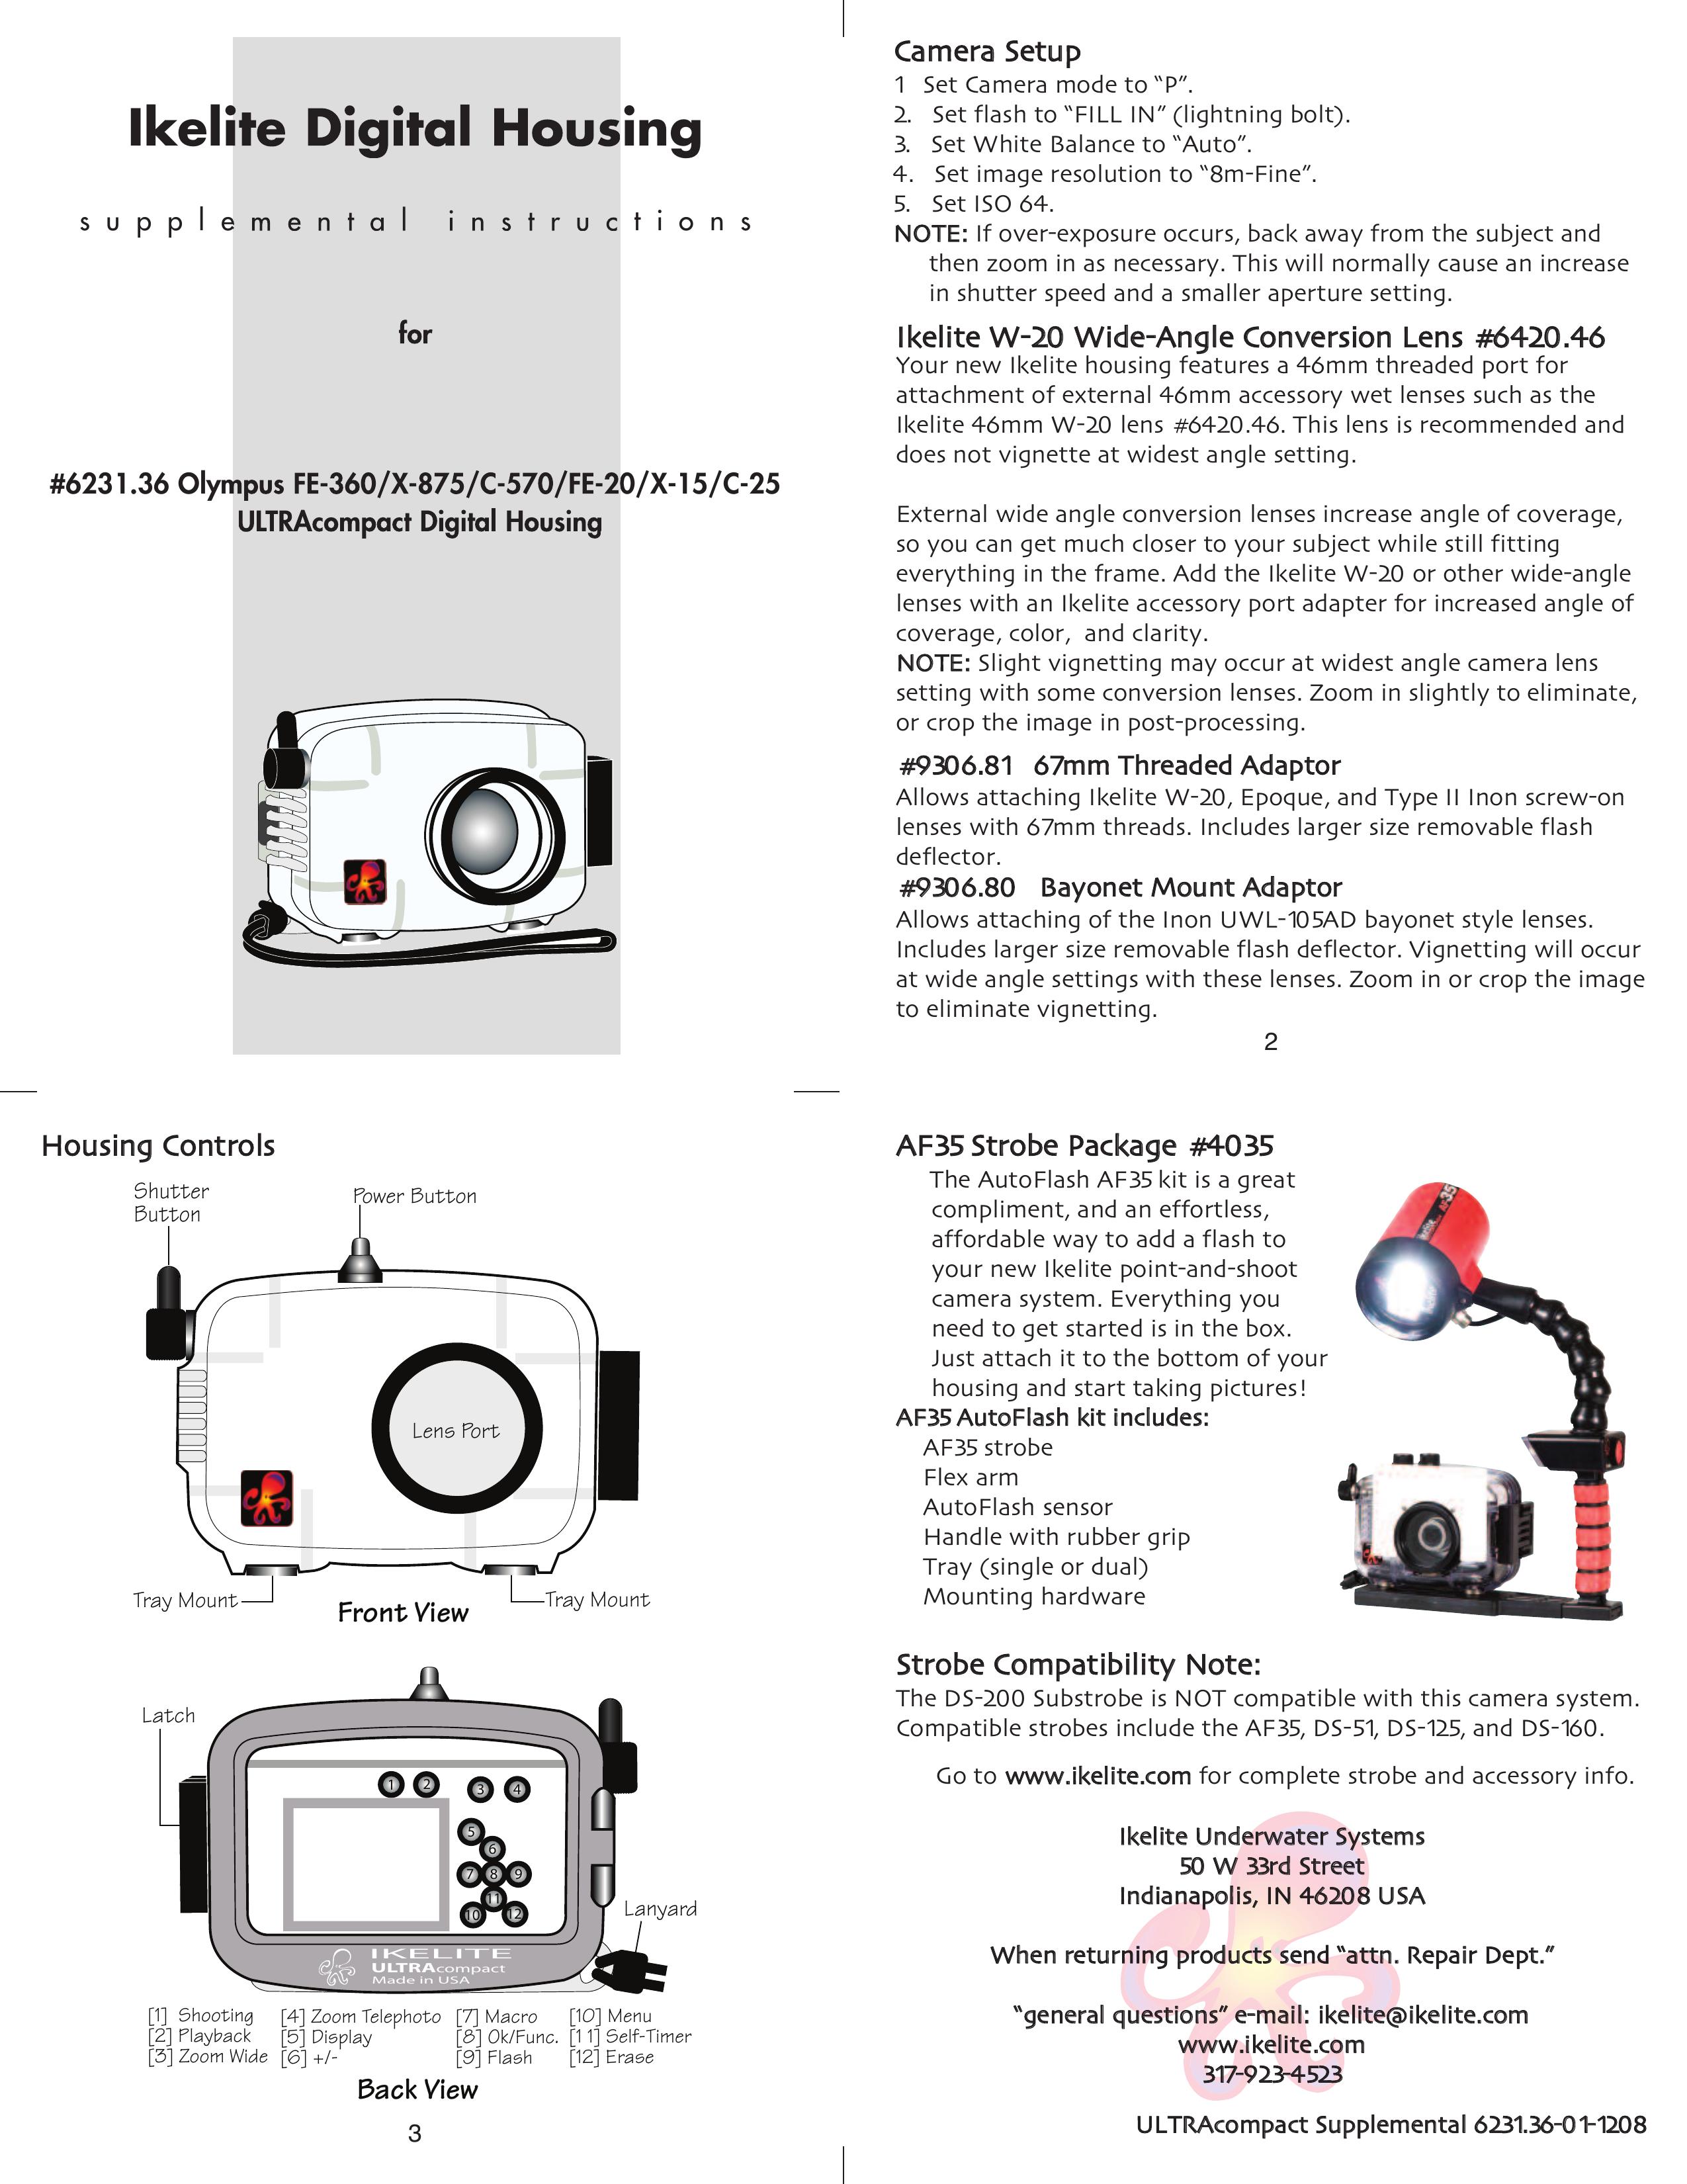 Ikelite C-570 Digital Camera User Manual